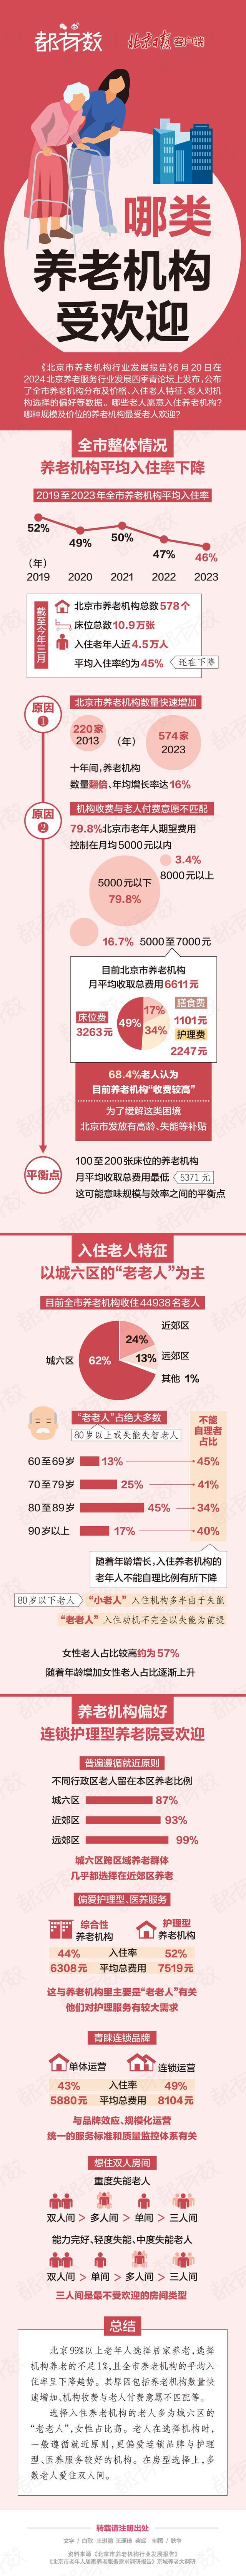 图解| 北京哪些老人愿意入住养老机构？哪类机构受欢迎？